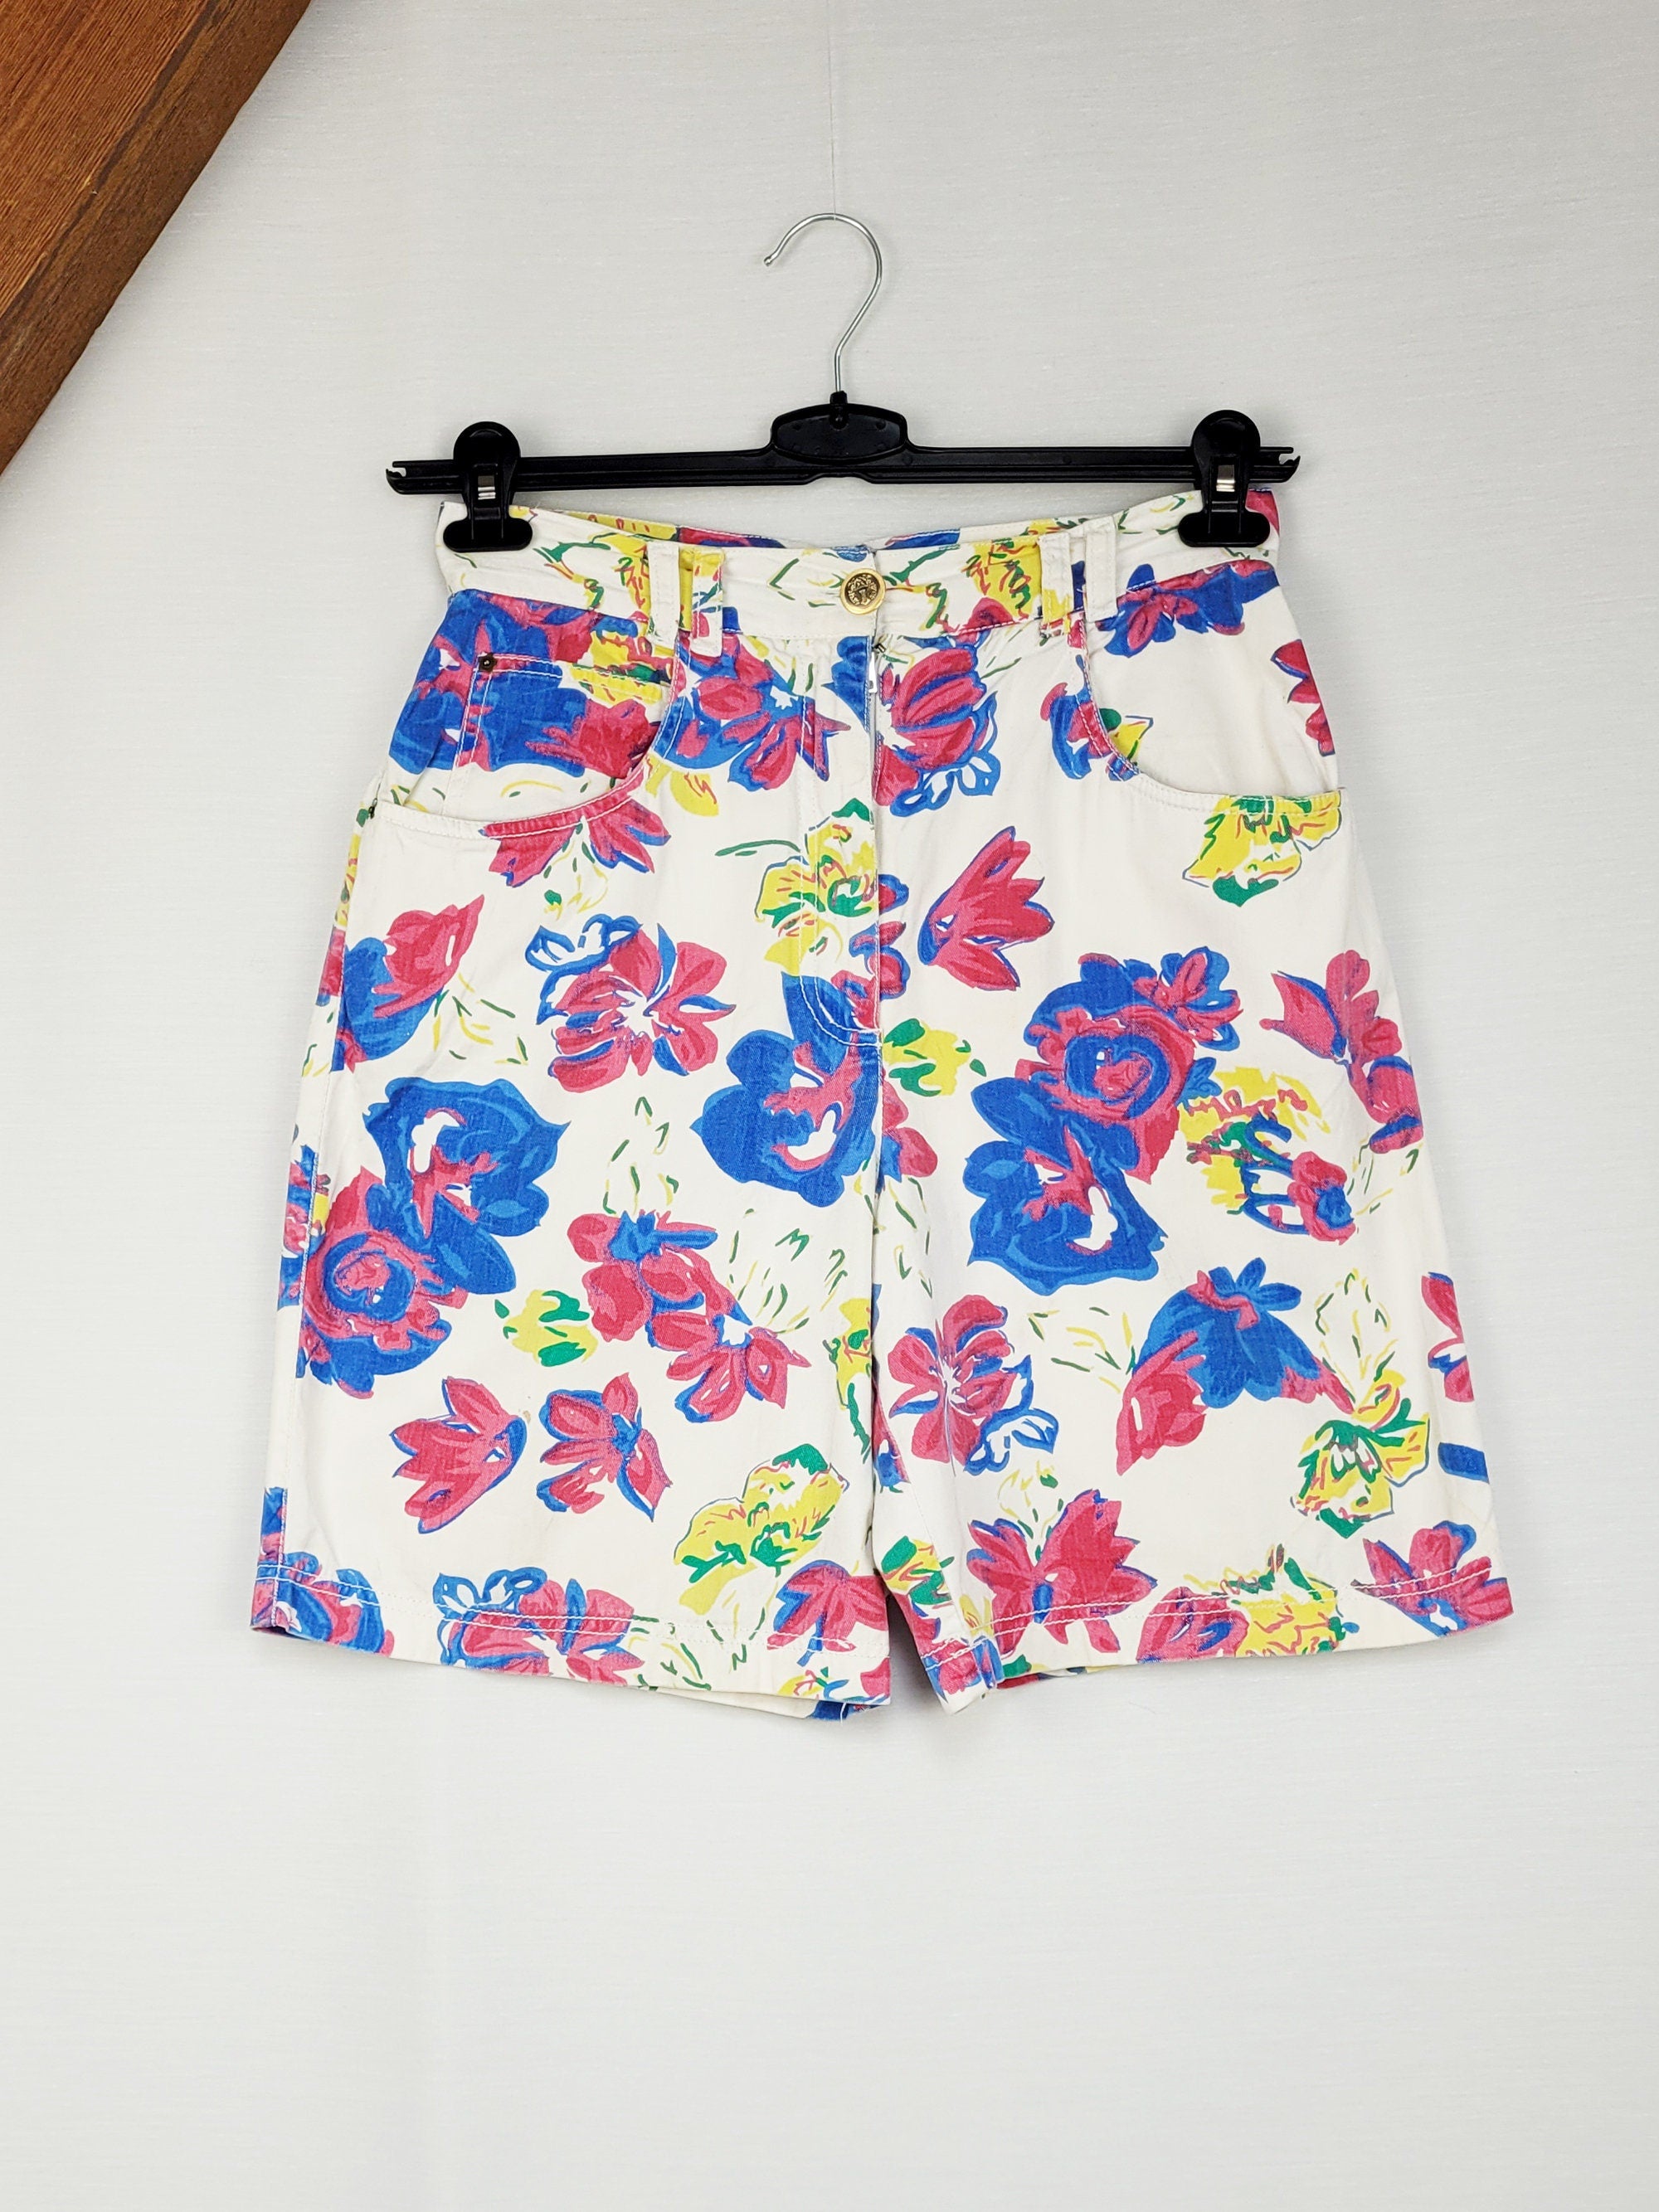 Vintage 90s colorful floral denim summer shorts